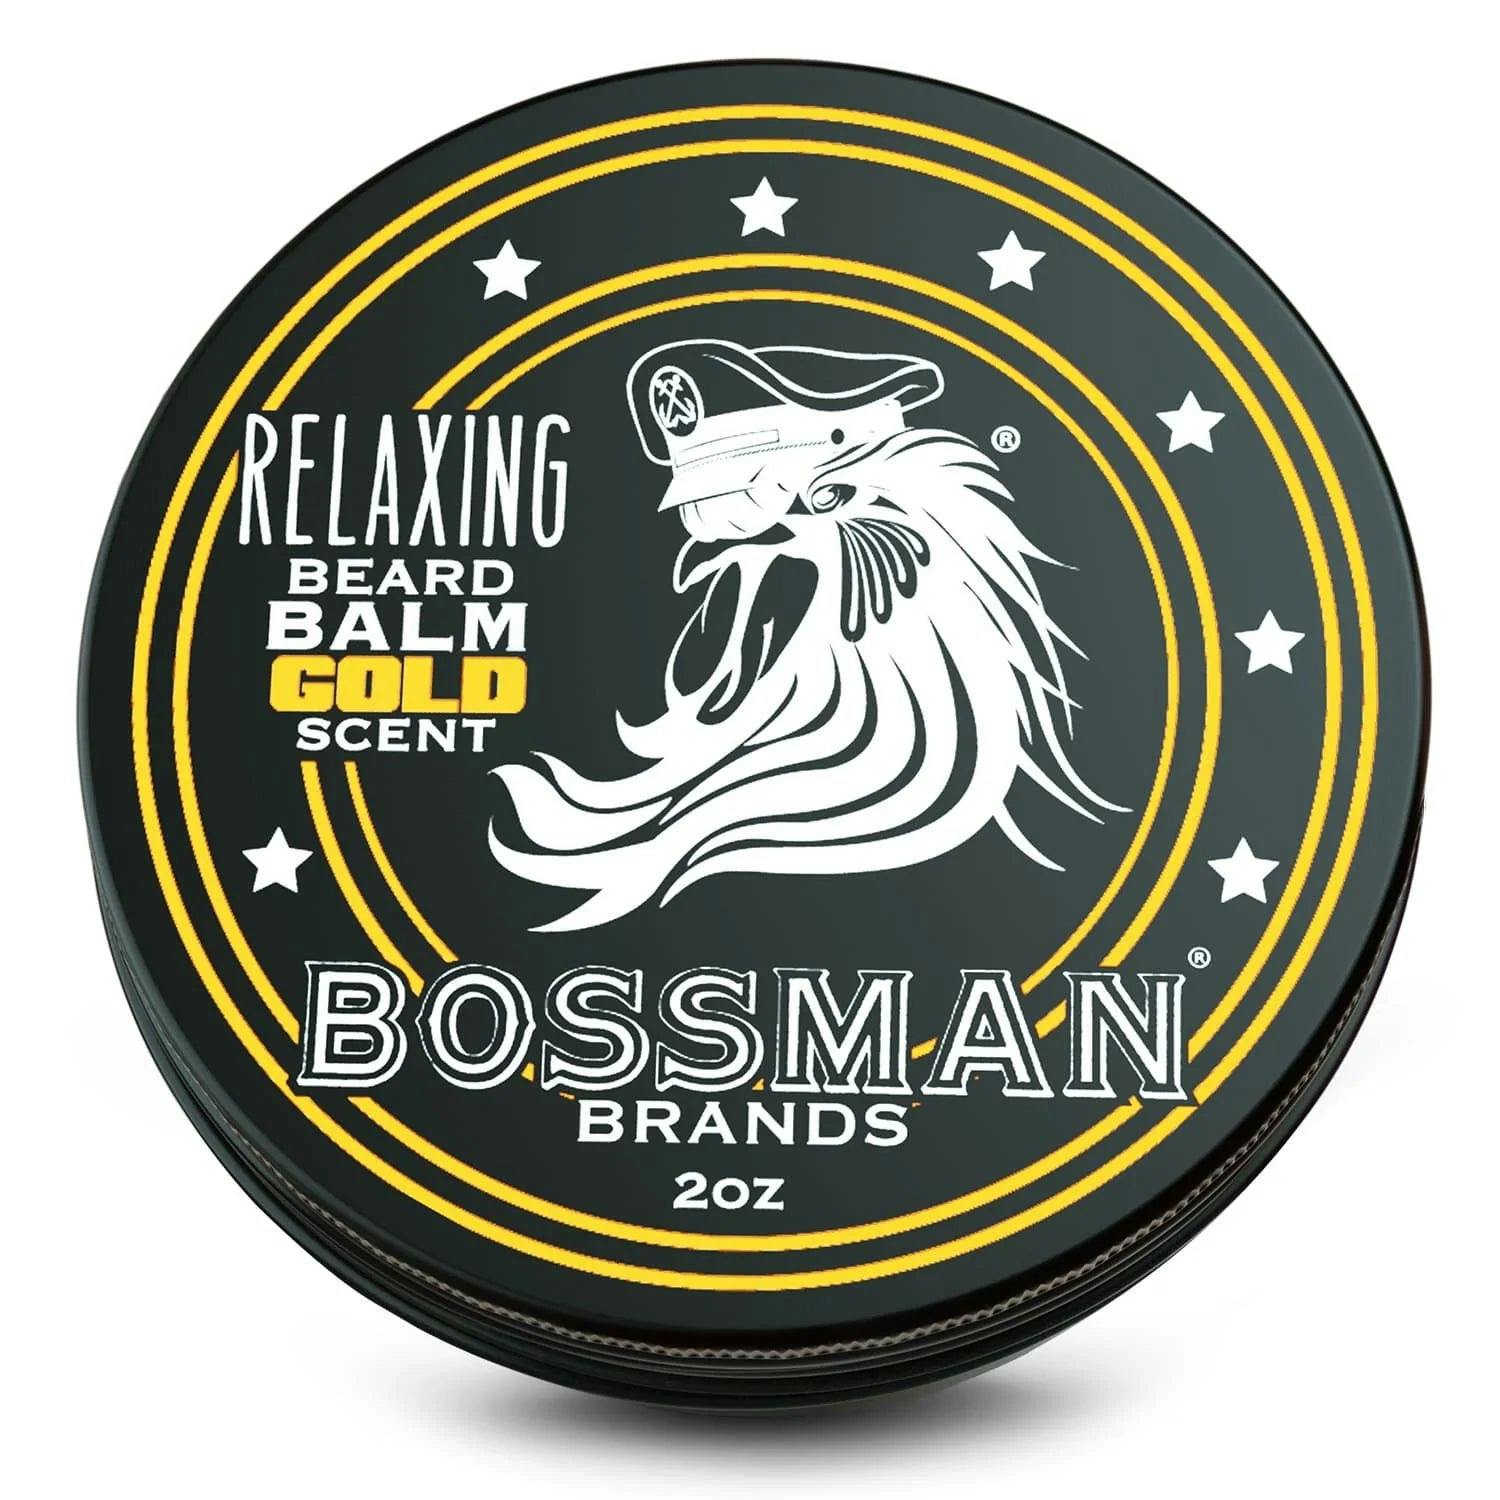 Bossman Relaxing Beard Balm - Gold Scent 57g